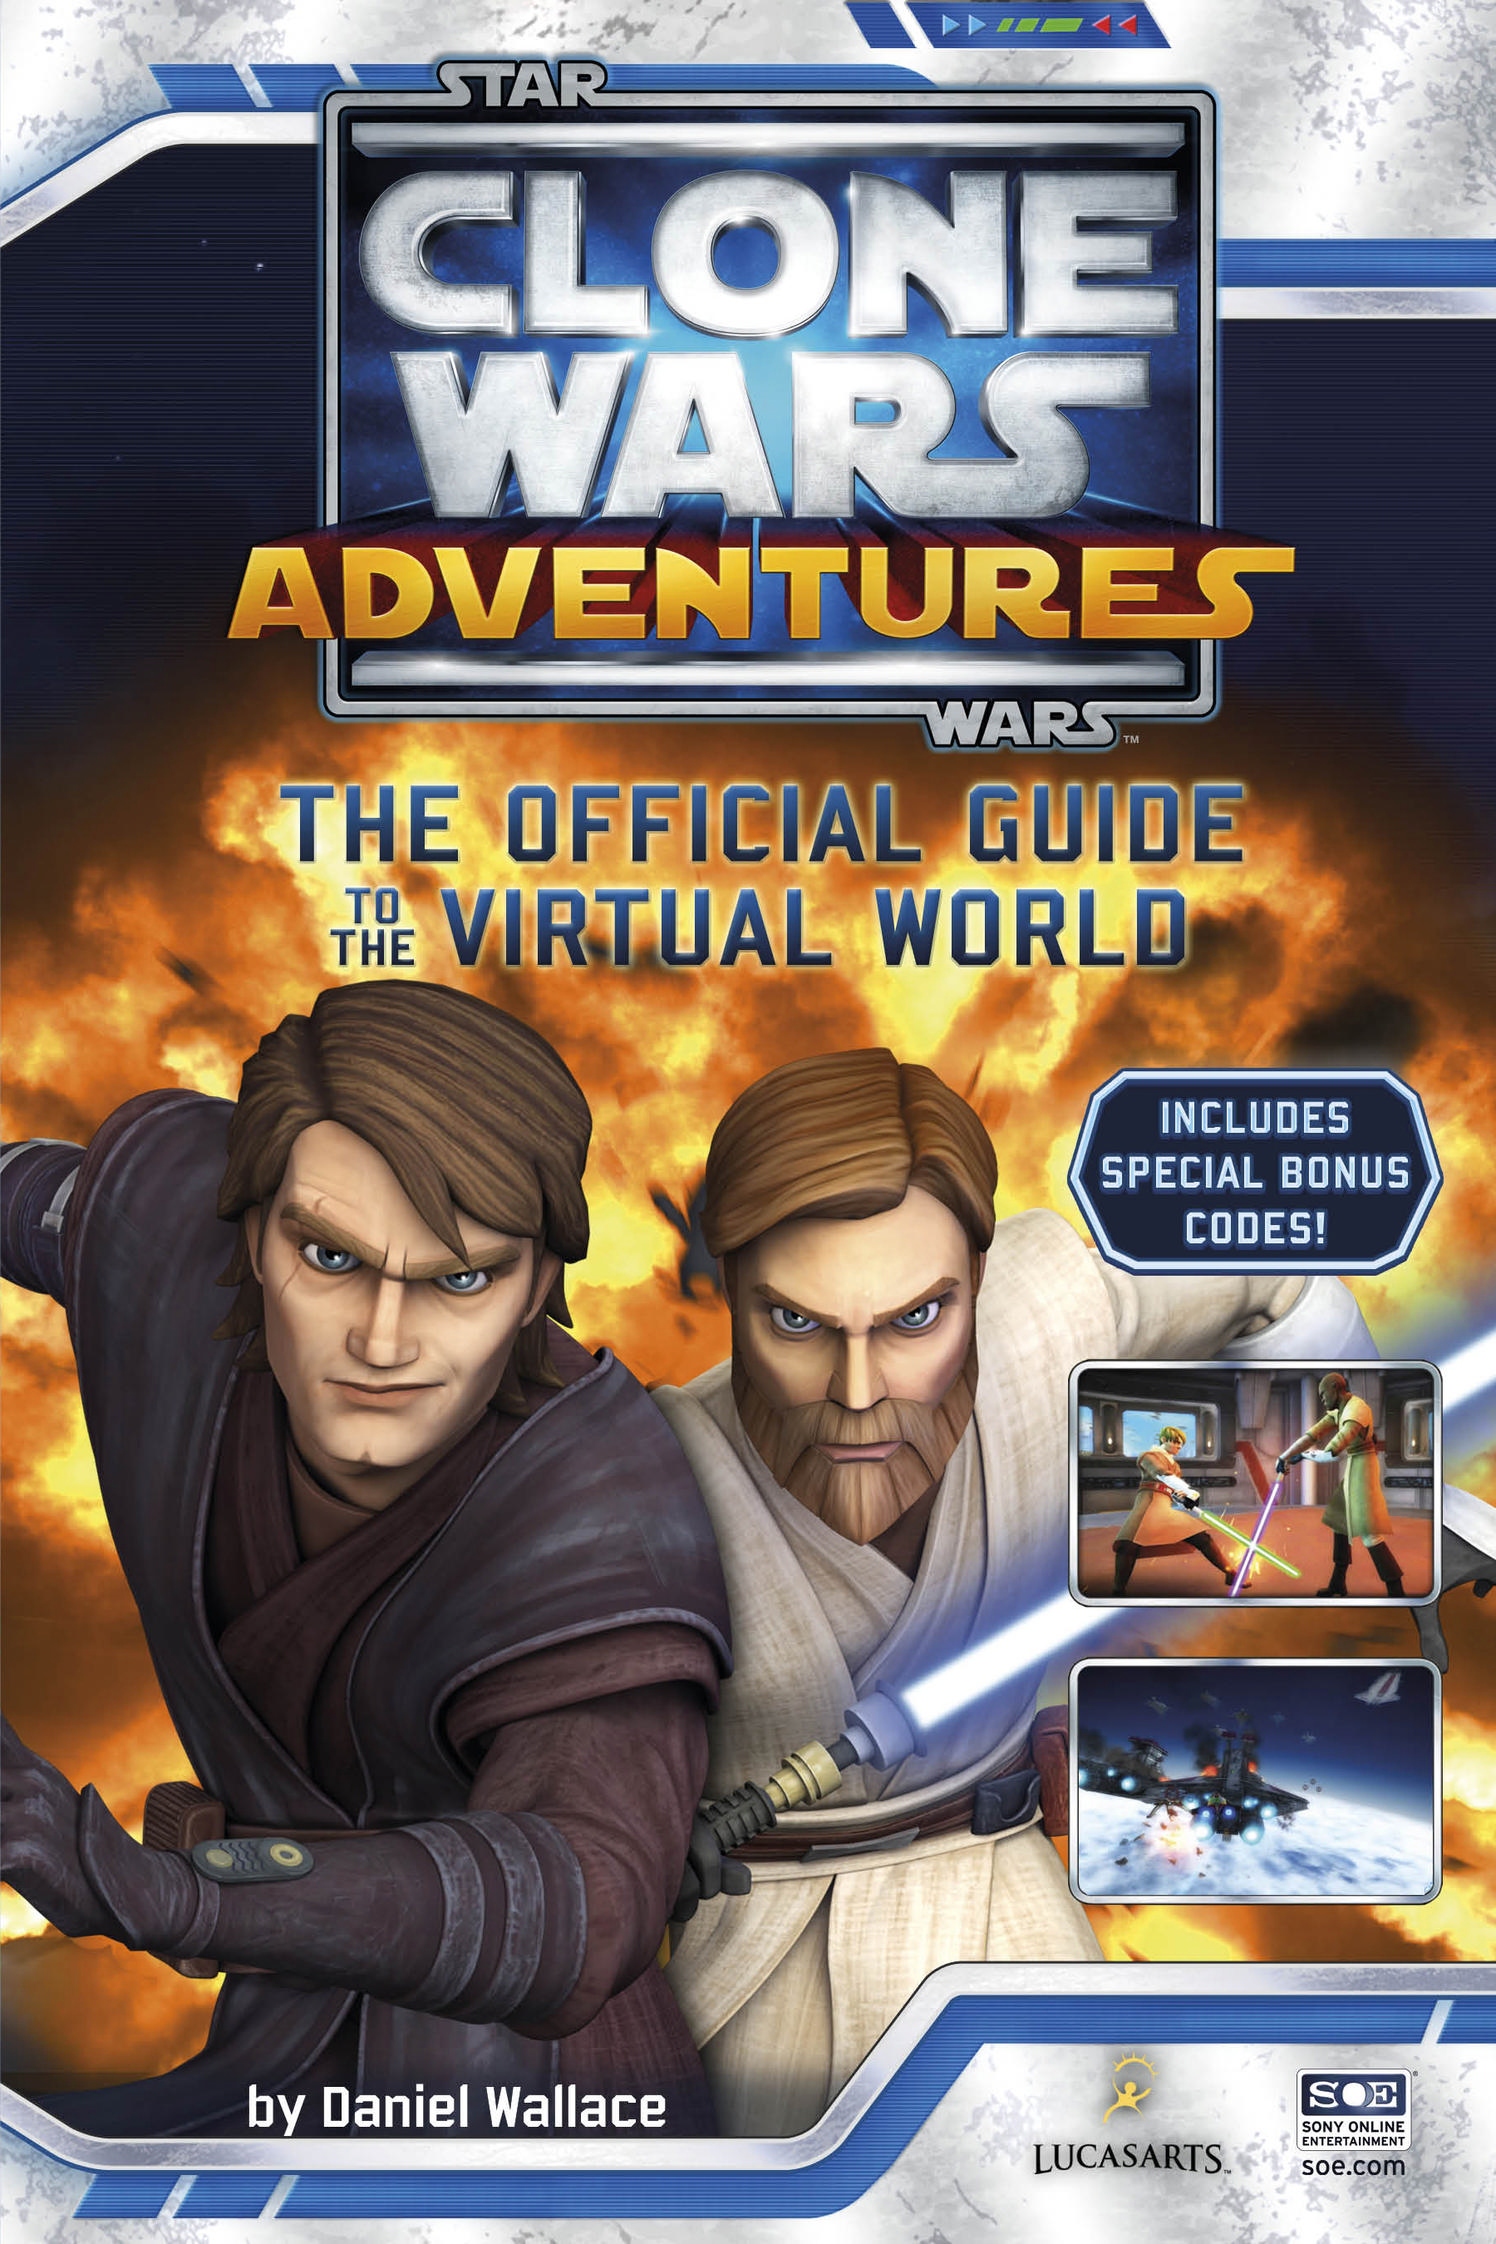 Star Wars: Clone Wars Adventures. Звездные войны персонажи Дэниел Уоллес. Книга клон. Дэниел Уоллес «Звездные войны .полная история». Клон страницы